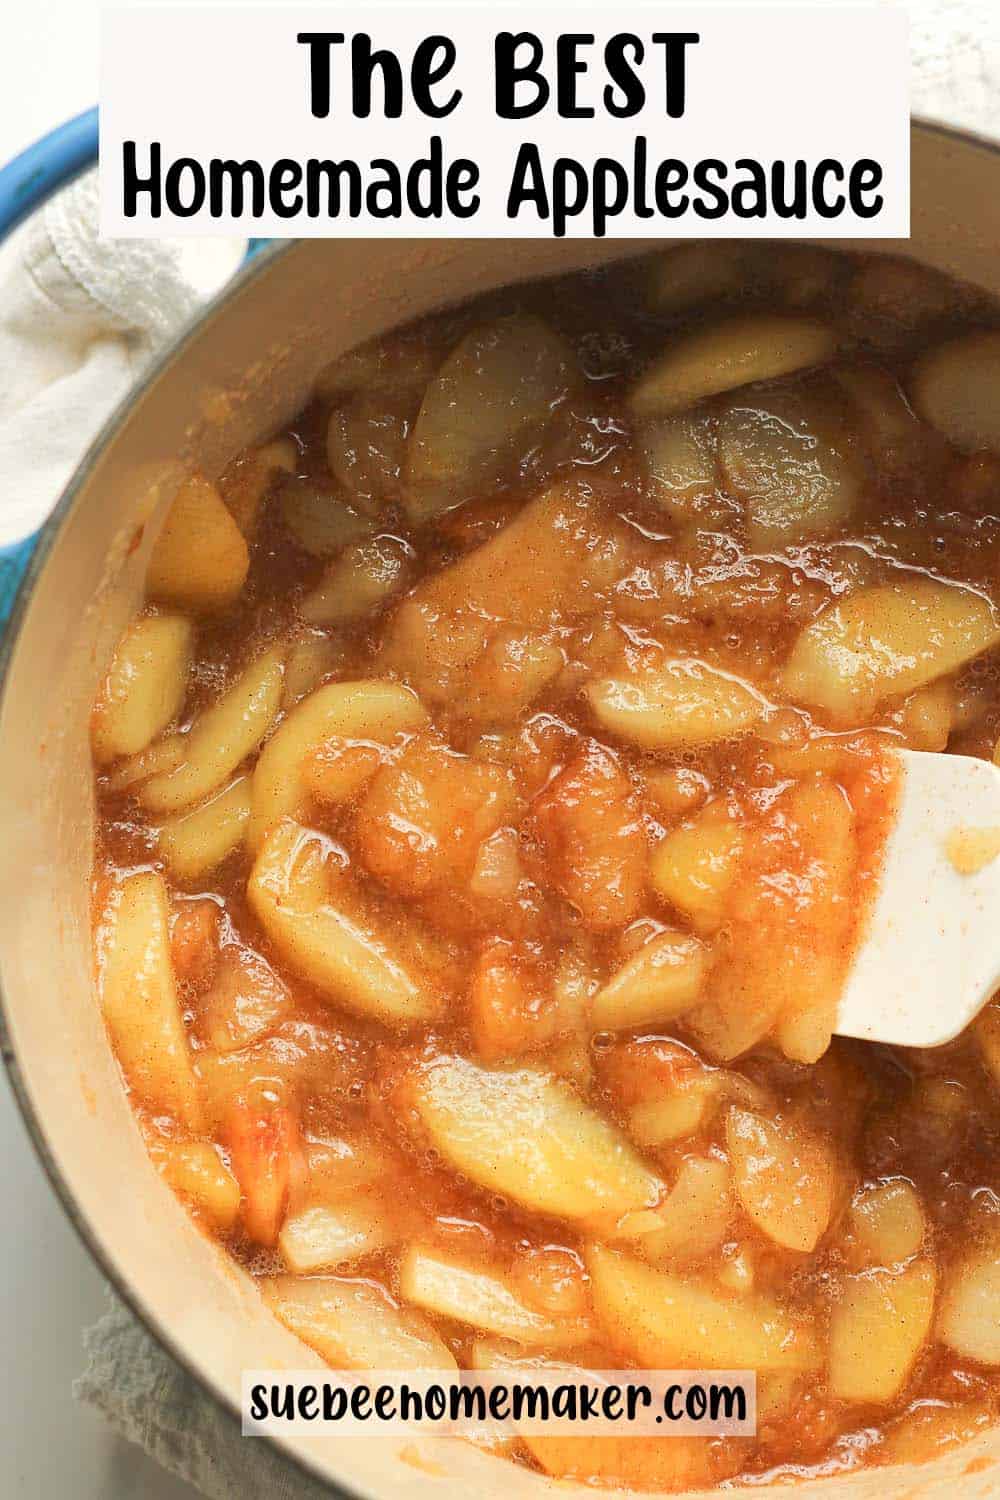 A stock pot of the best homemade applesauce.